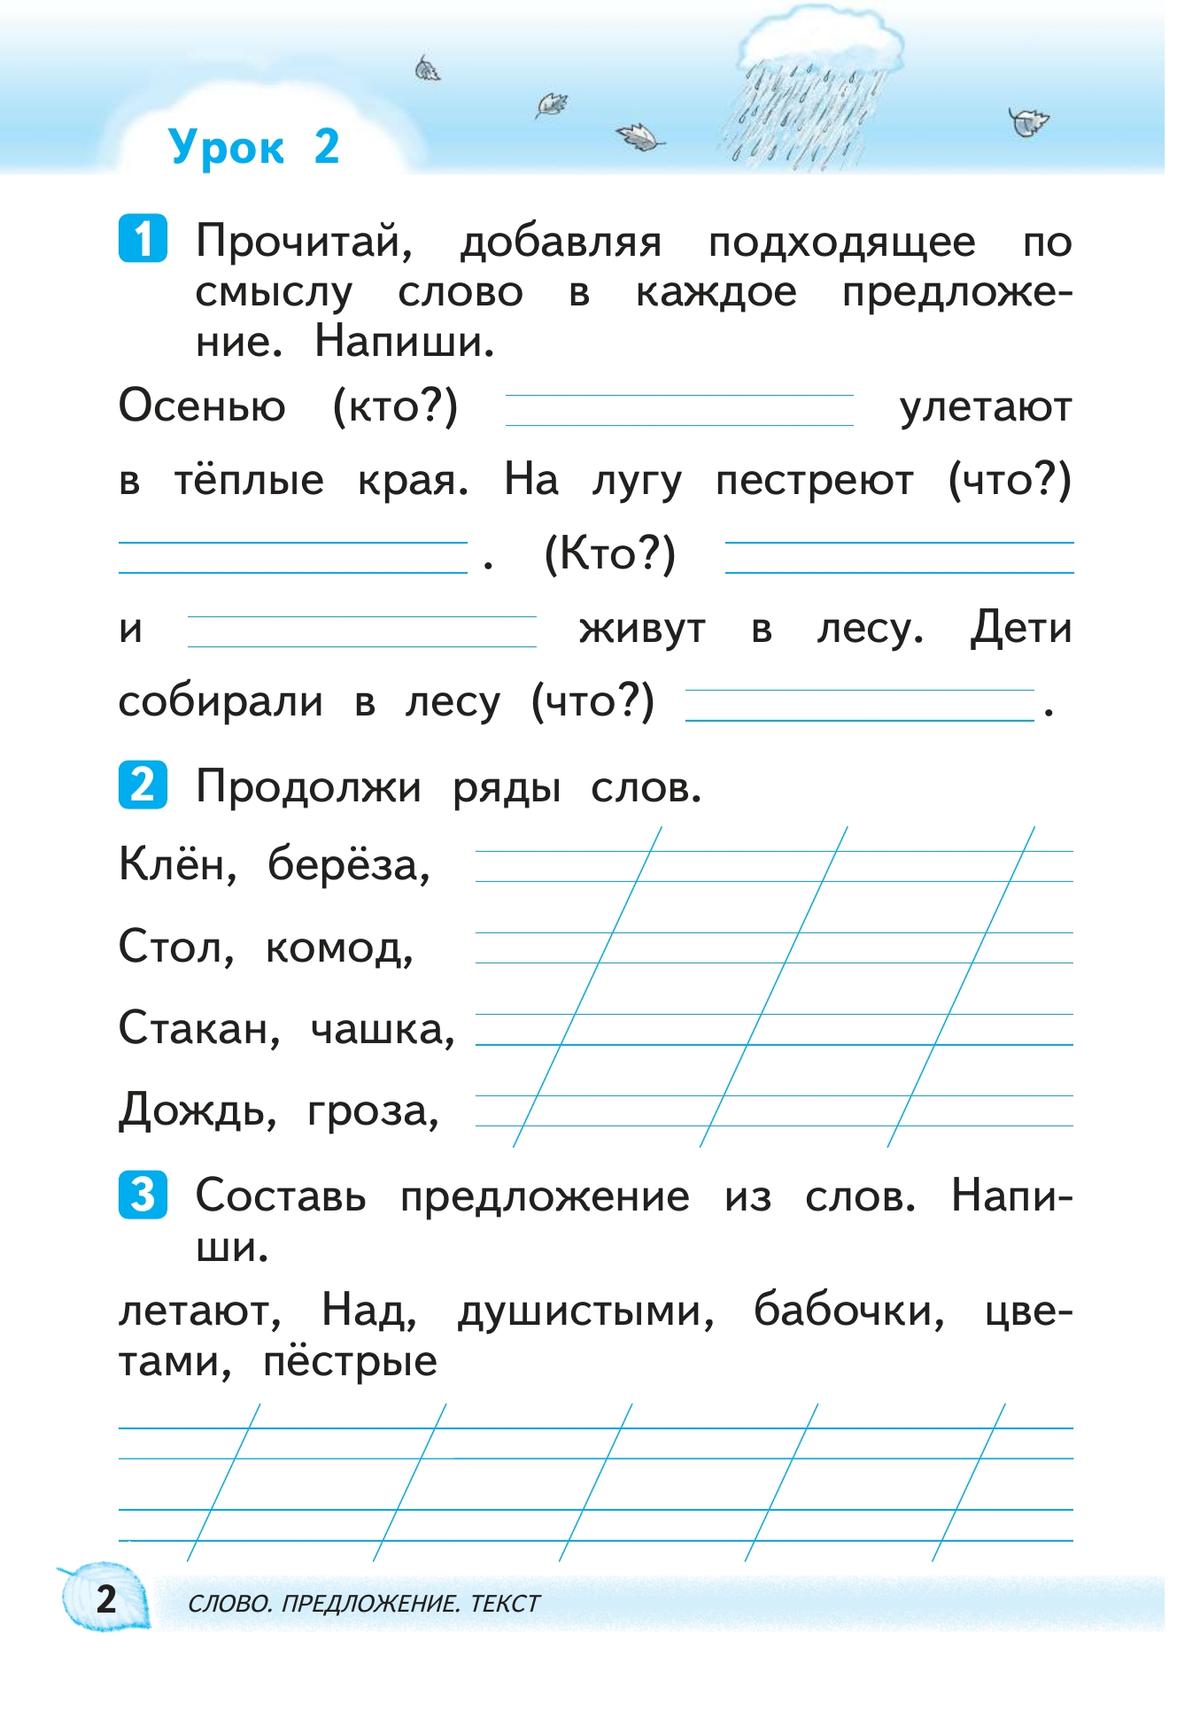 Русский язык. 1 класс. Развитие речи. Рабочая тетрадь 3